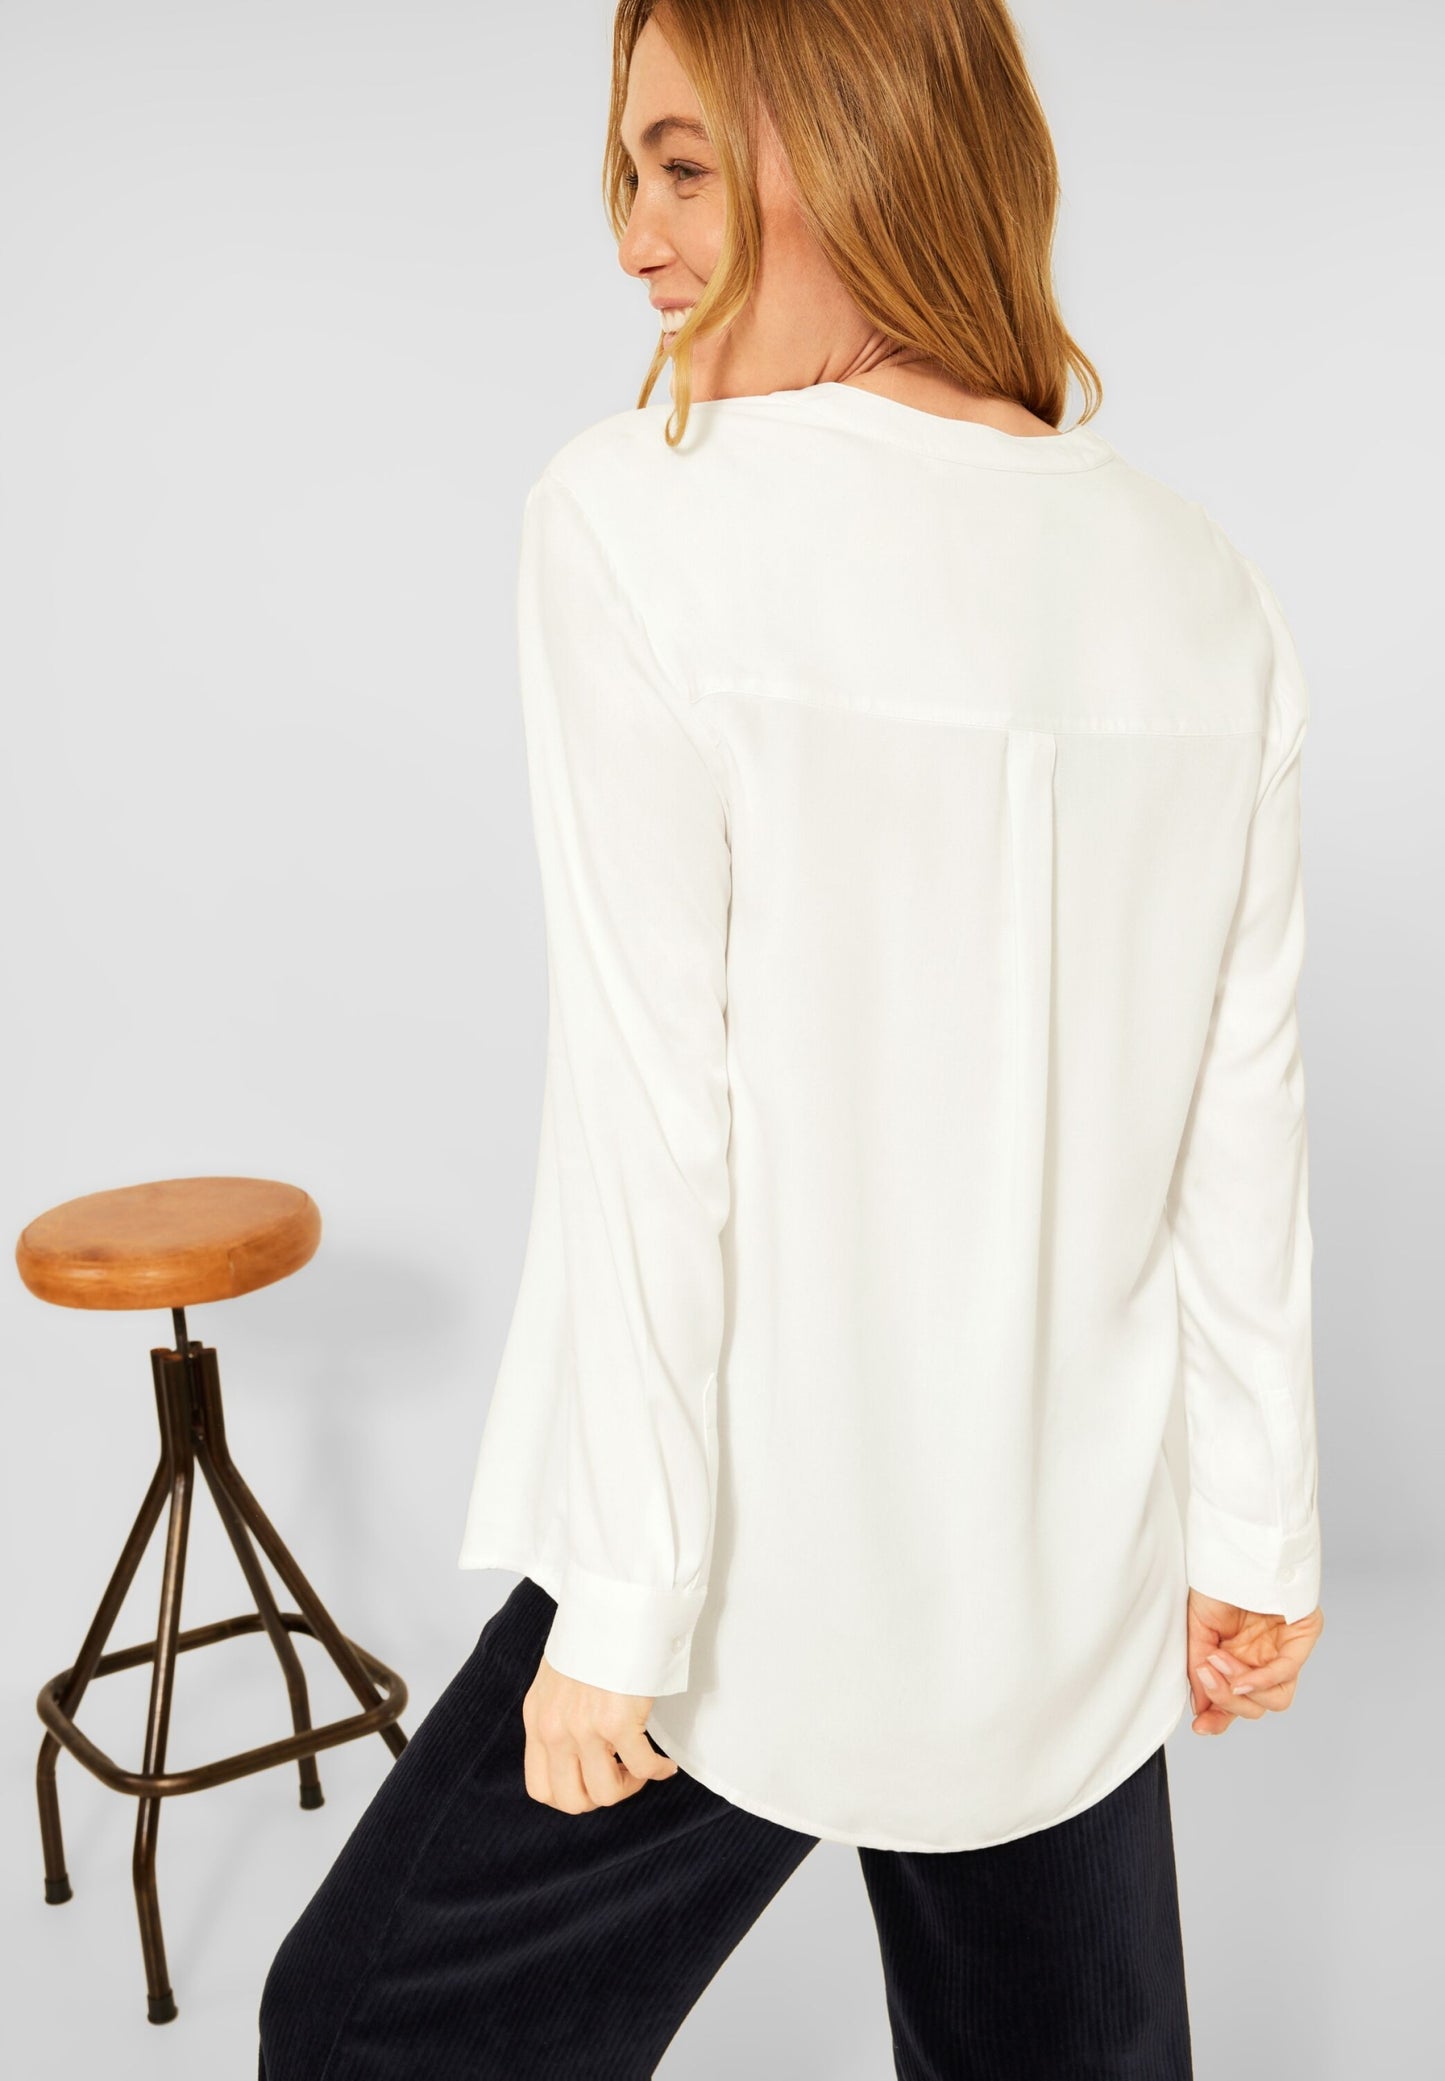 Long blouse in plain color